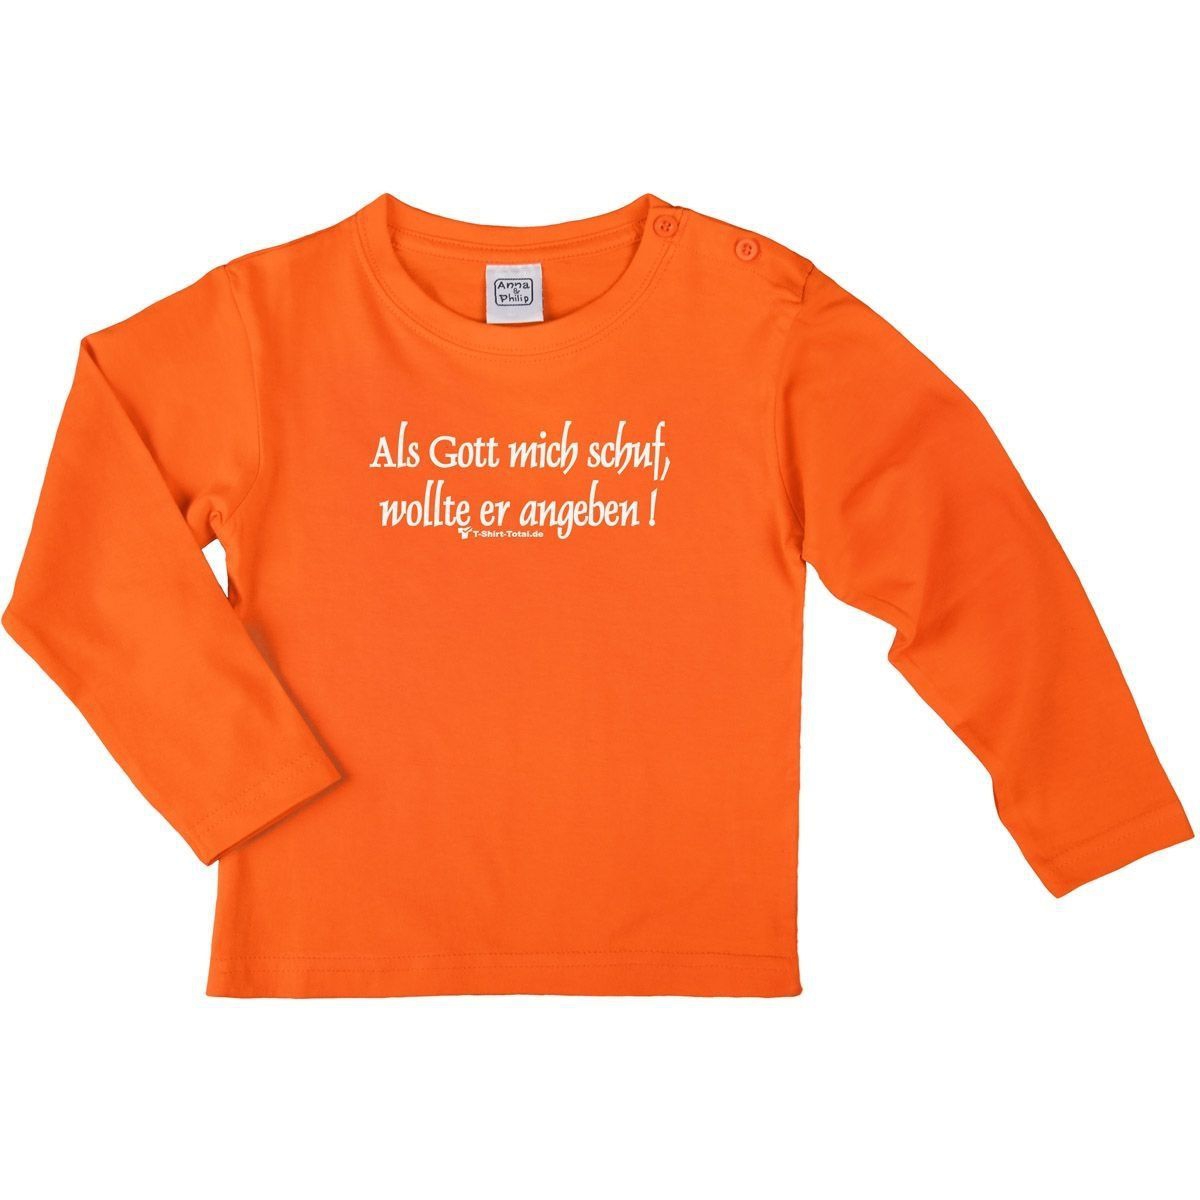 Als Gott mich schuf Kinder Langarm Shirt orange 56 / 62